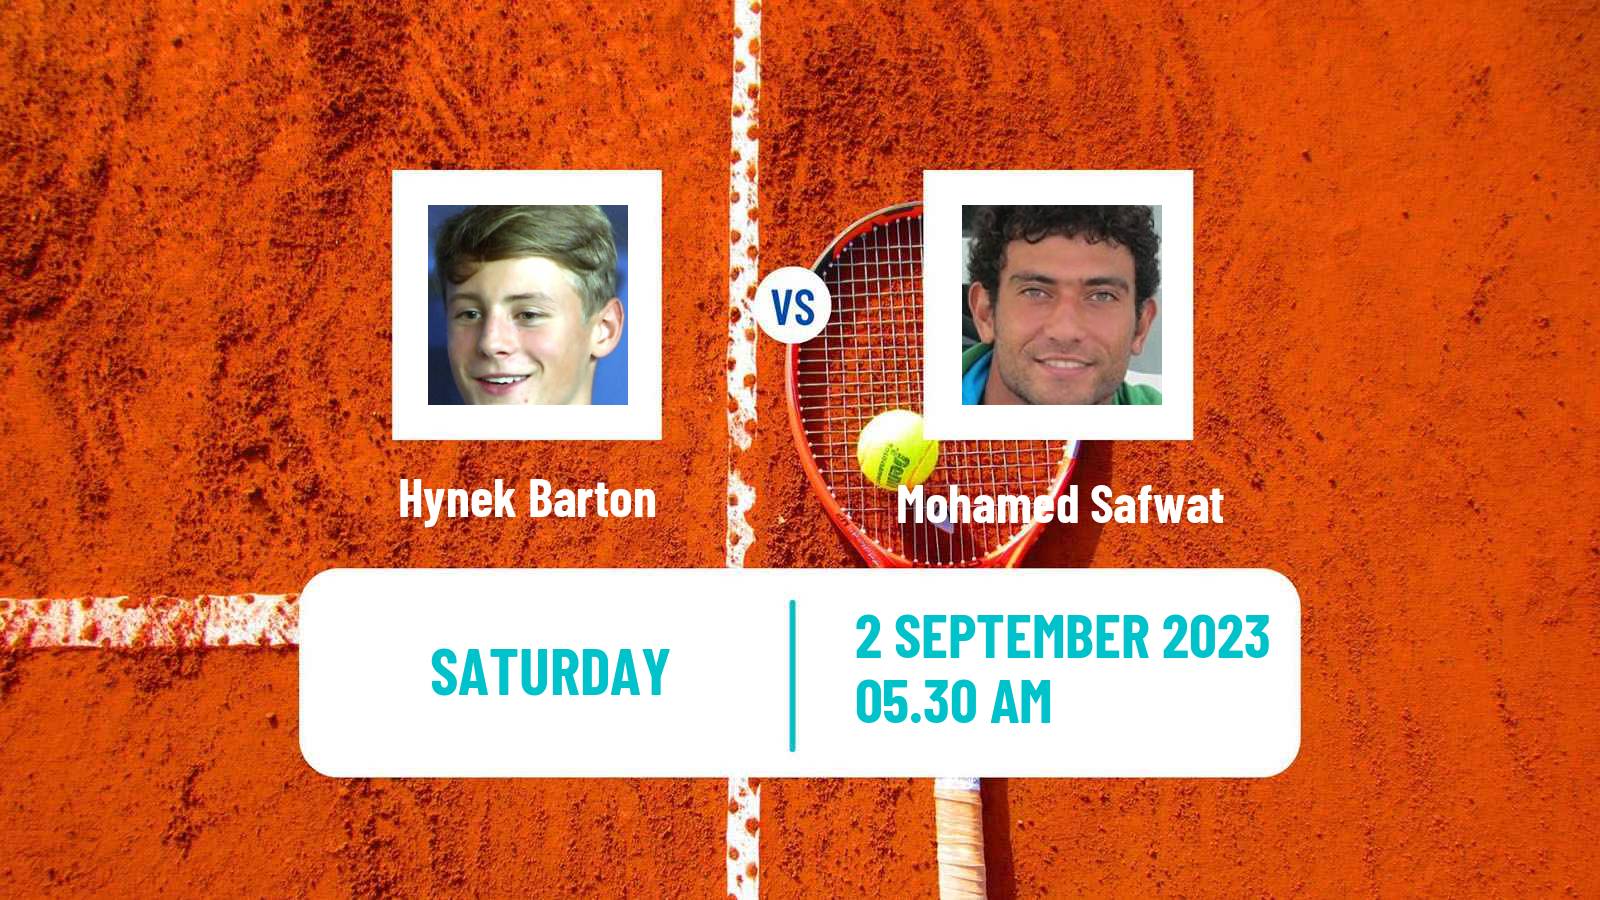 Tennis ITF M25 Jablonec Nad Nisou 2 Men Hynek Barton - Mohamed Safwat